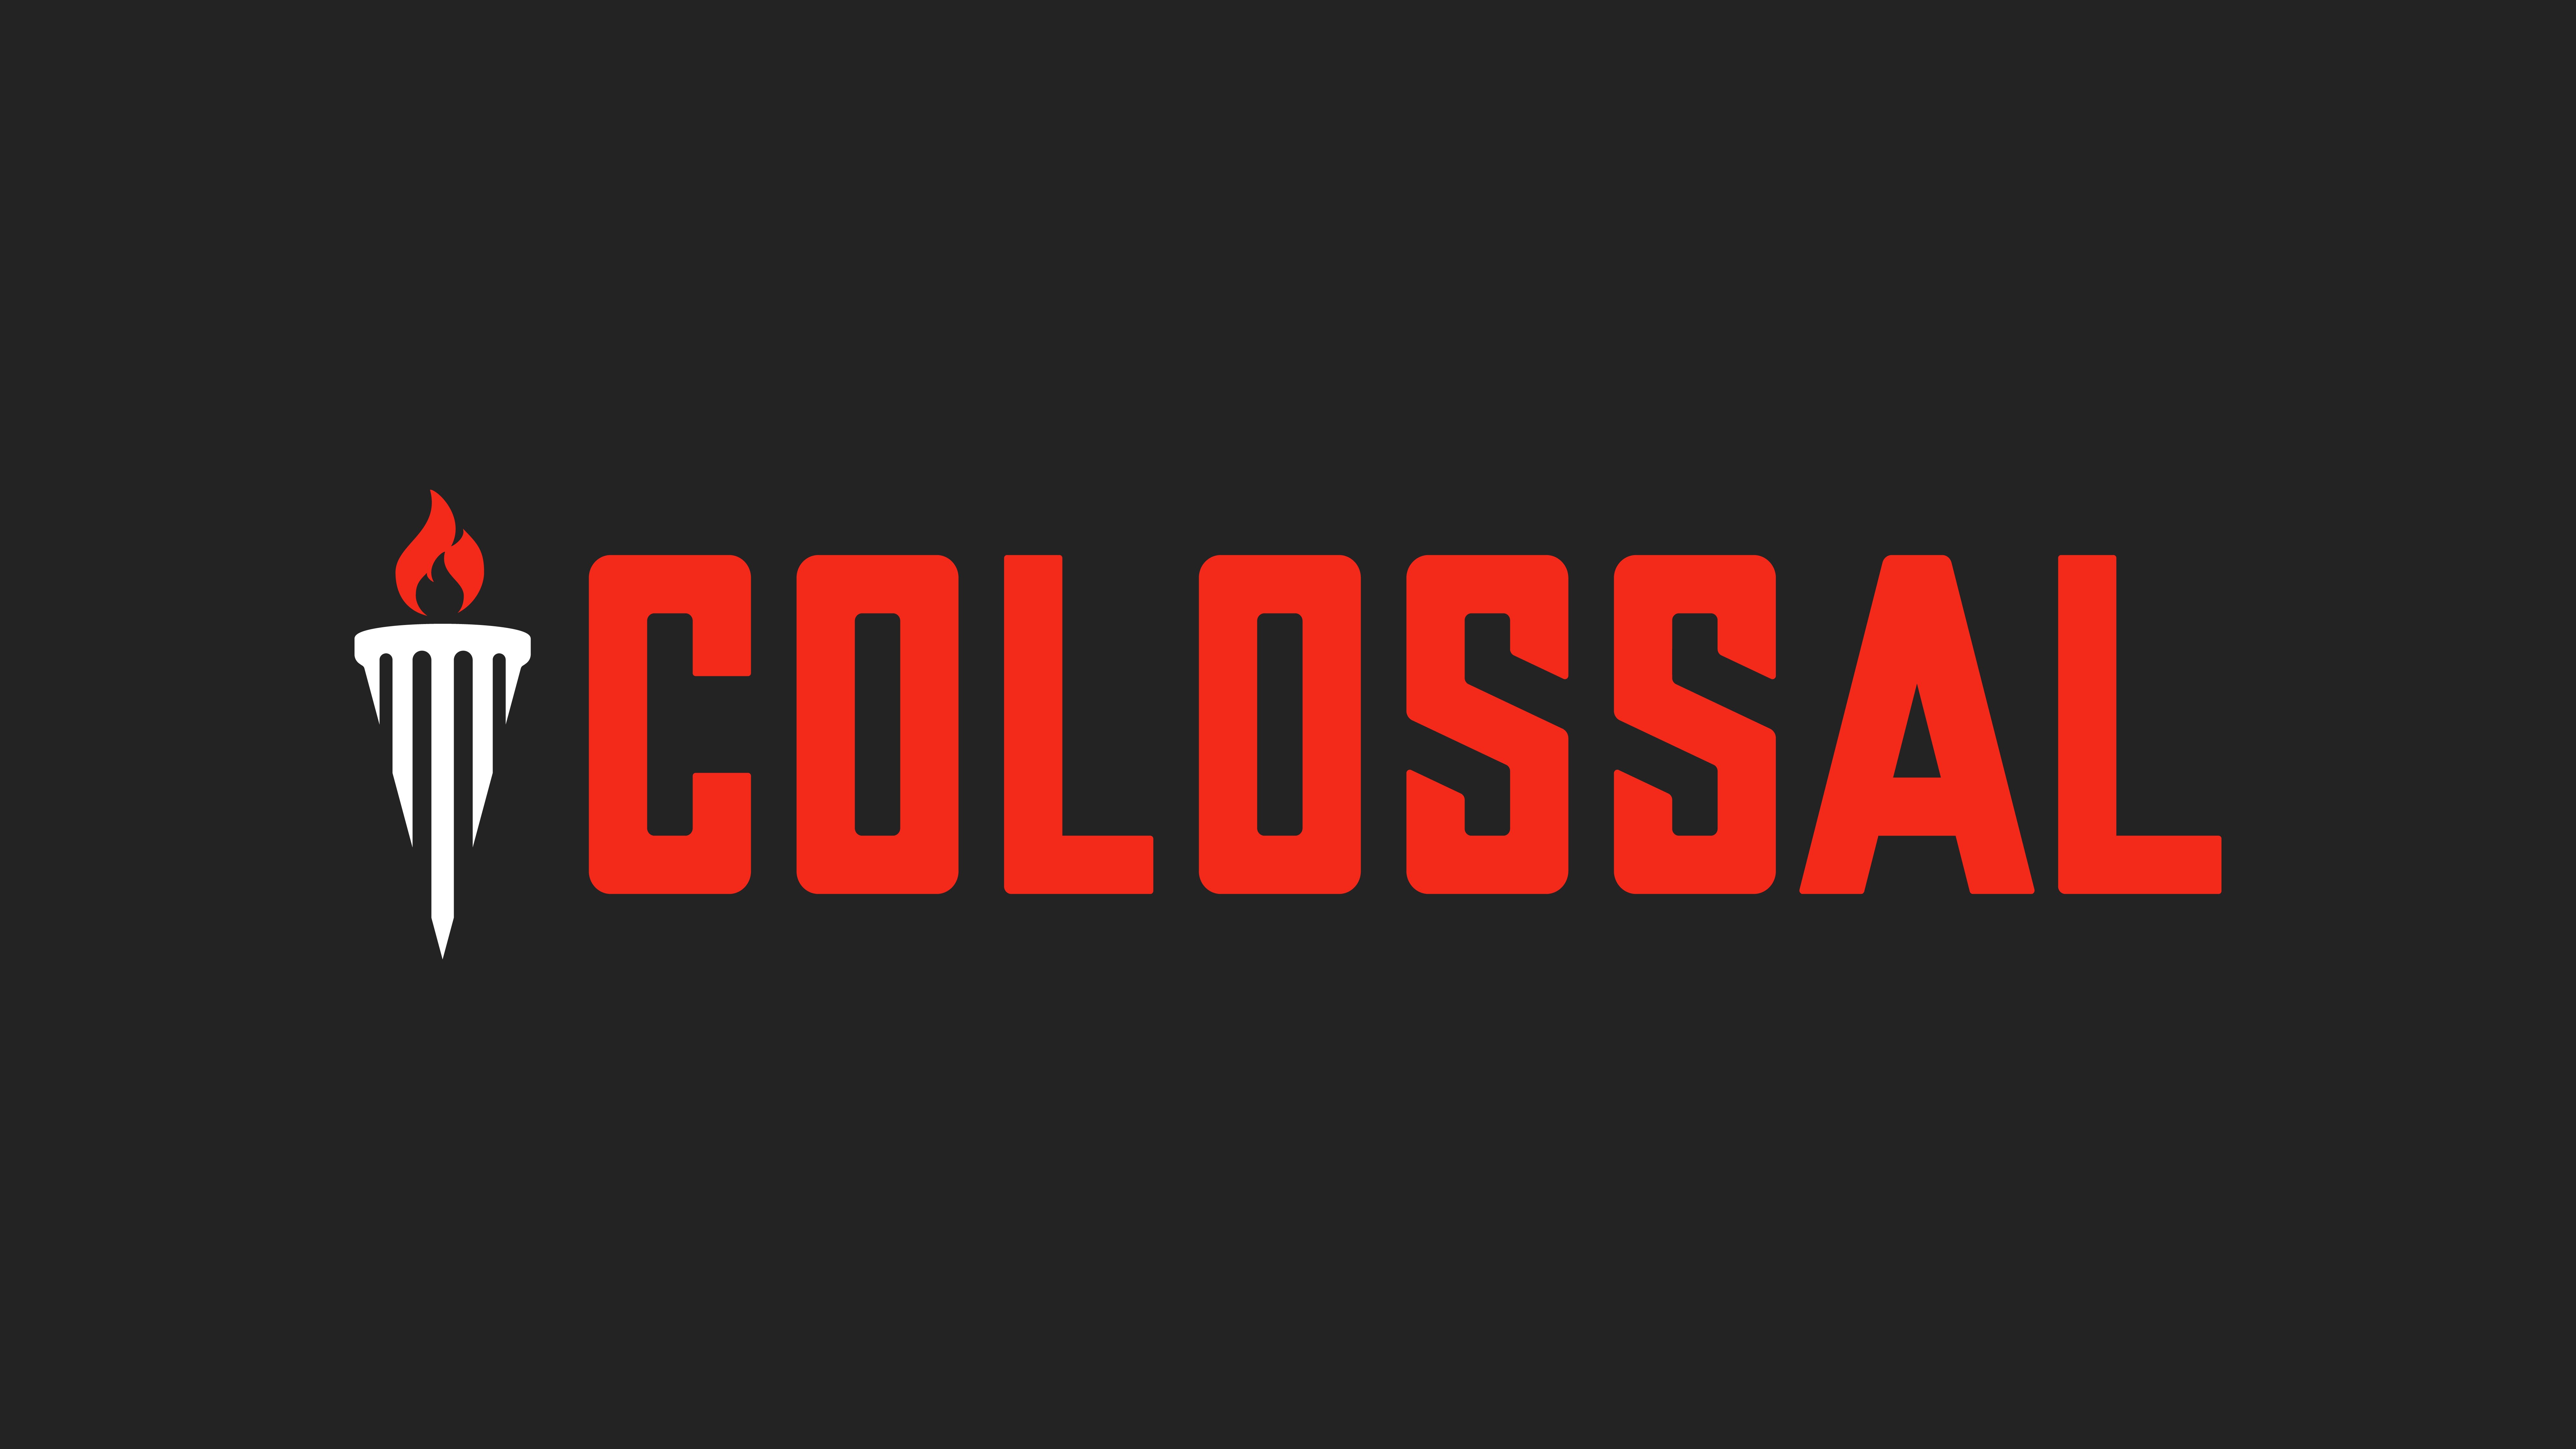 Colossal_FullColor_BlackBG